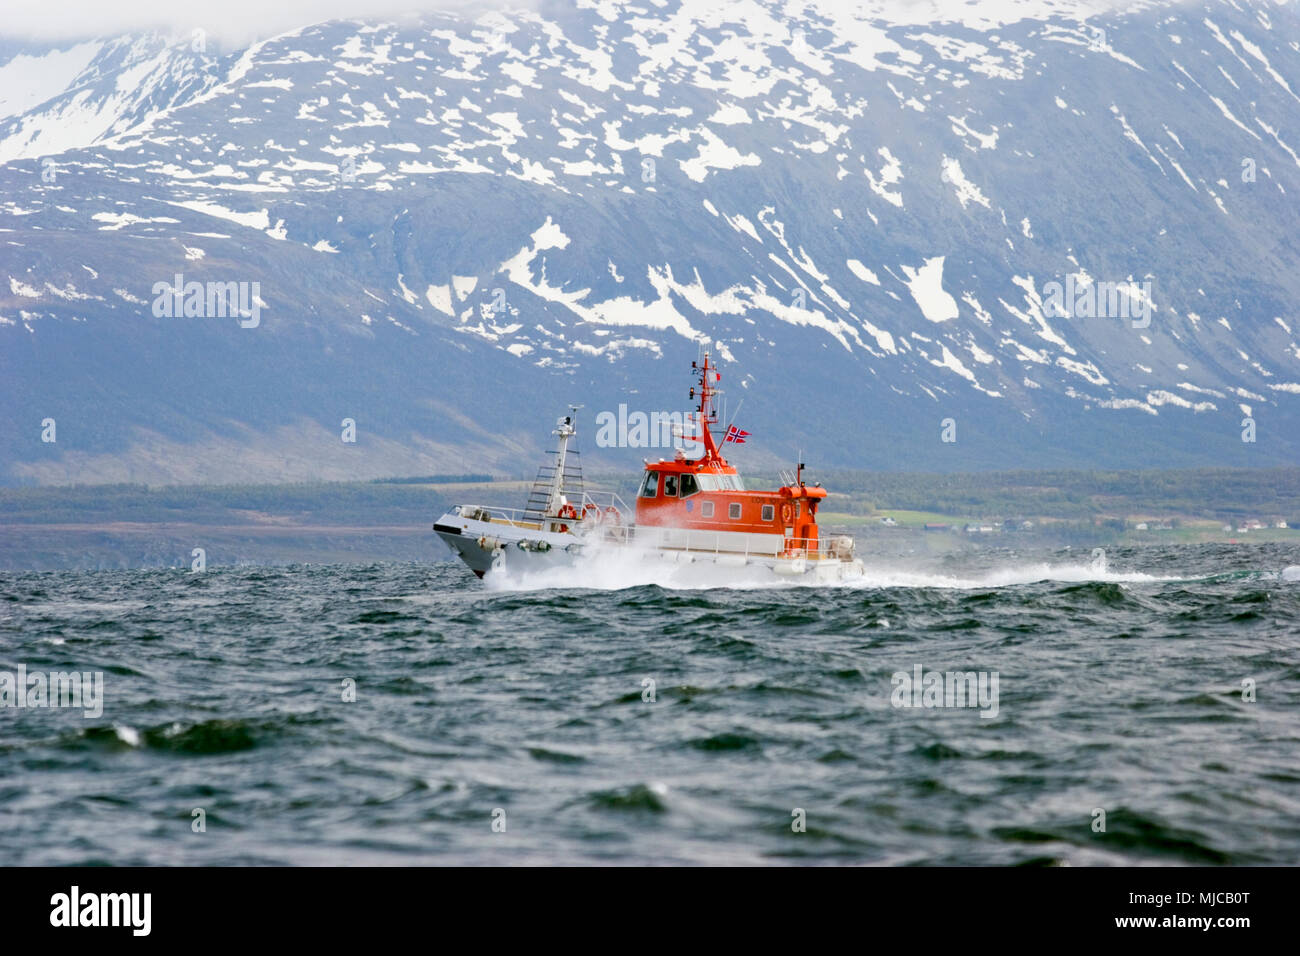 Lotsenboot im Einsatz in Nordnorwegen Foto Stock